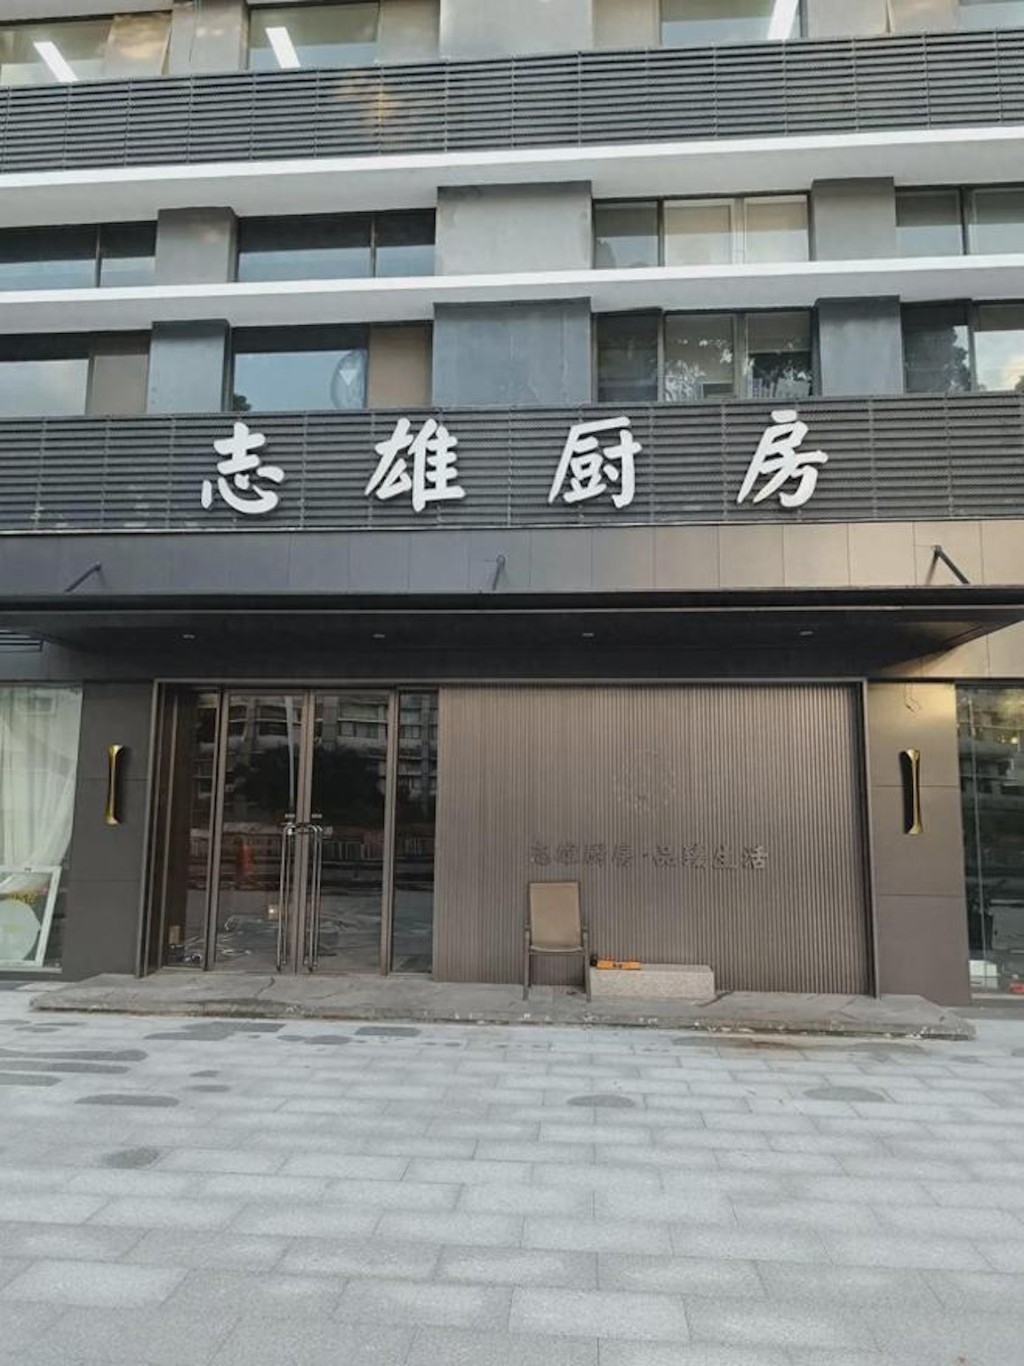 不過近日有網民晒出多張照片，指其深圳市南山区蛇口分店已結業。